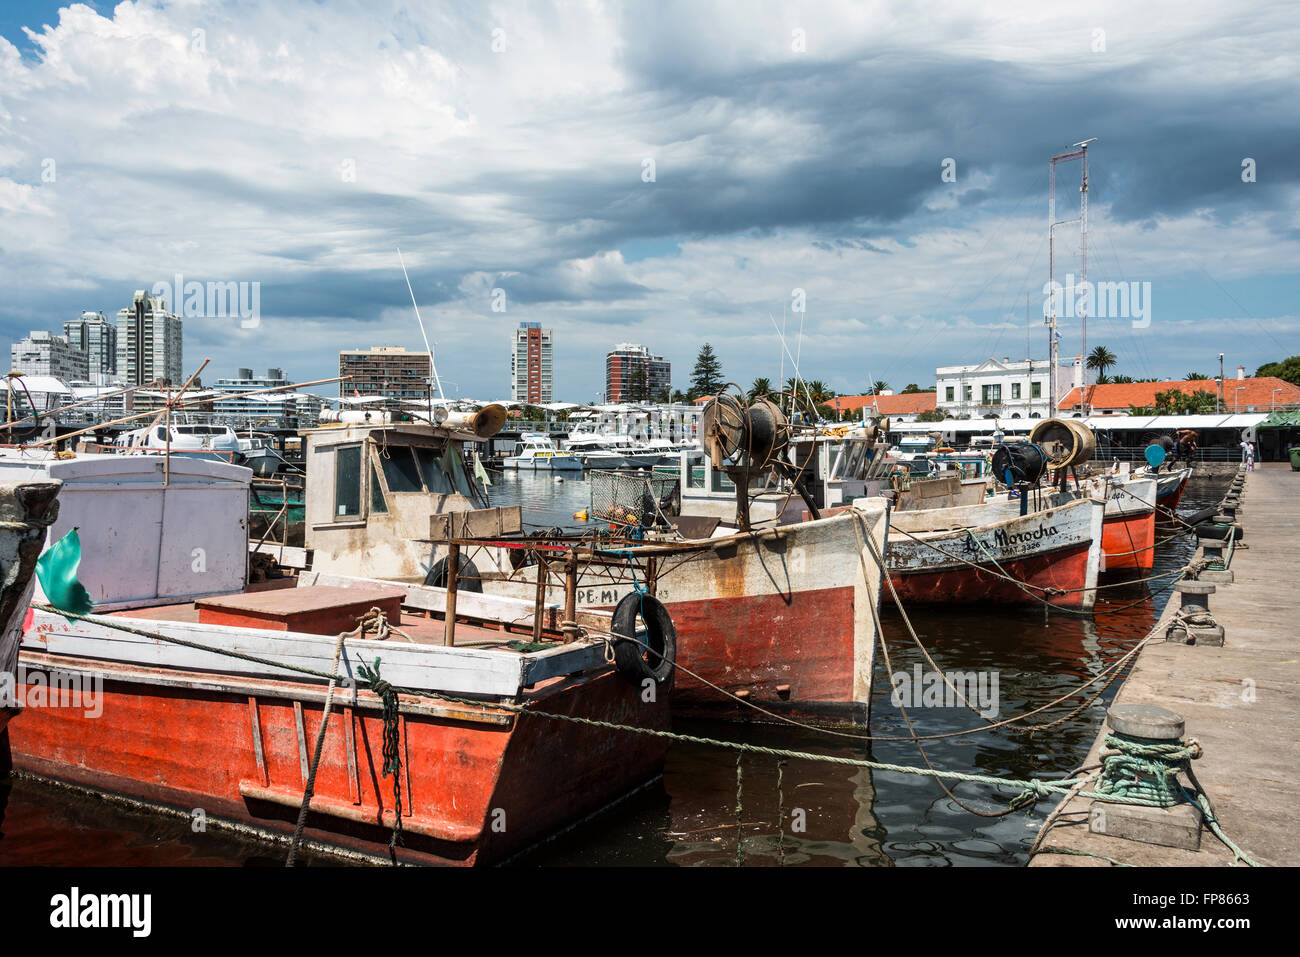 MALDONADO, 29. Februar 2016 - Classic Red Angelboote/Fischerboote vertäut vor die Yachten der reichen Leute in Punta del Este har Stockfoto